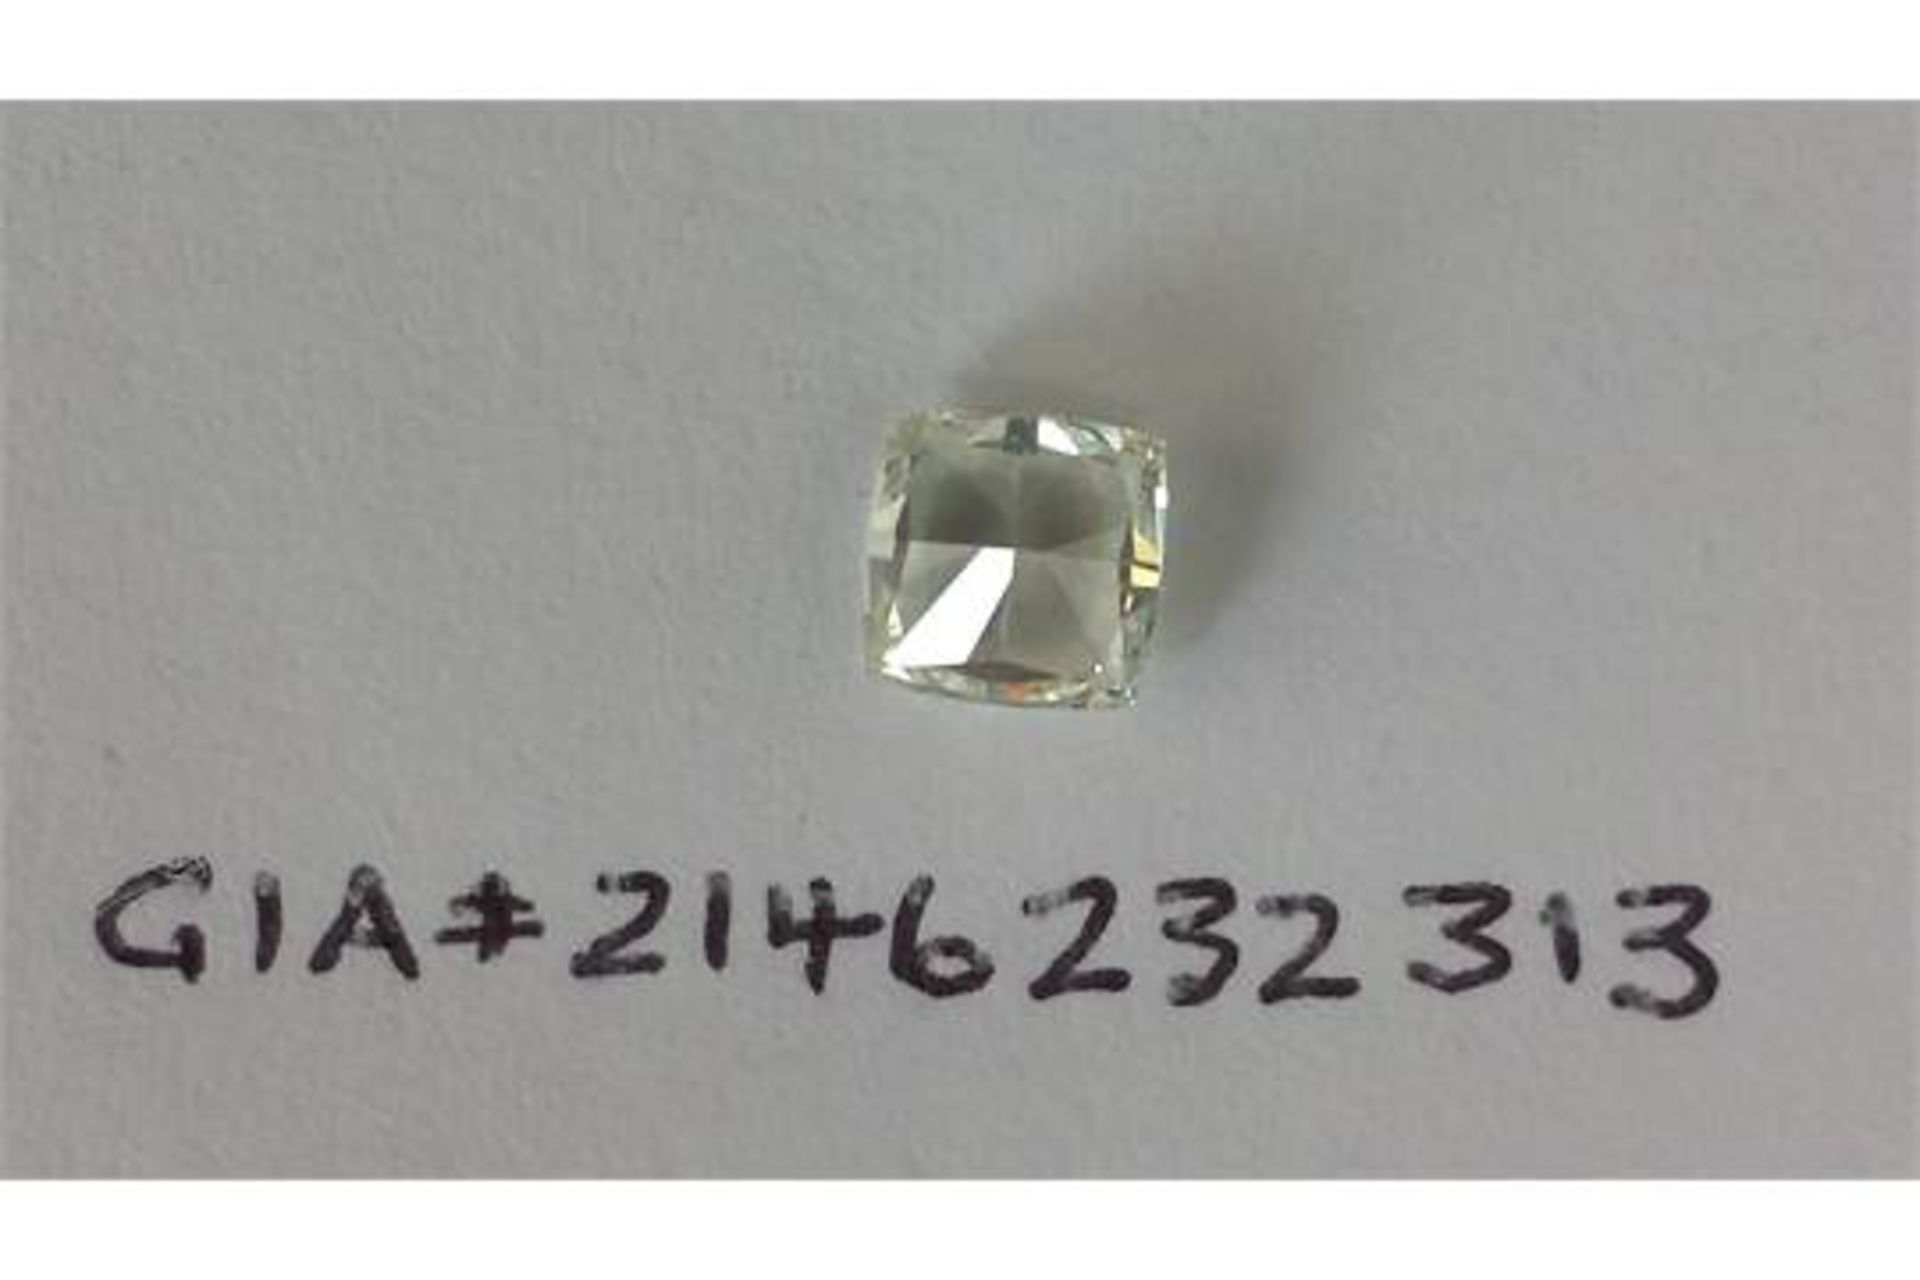 1.07 carat Modified Square Brilliant Diamond - Image 2 of 4